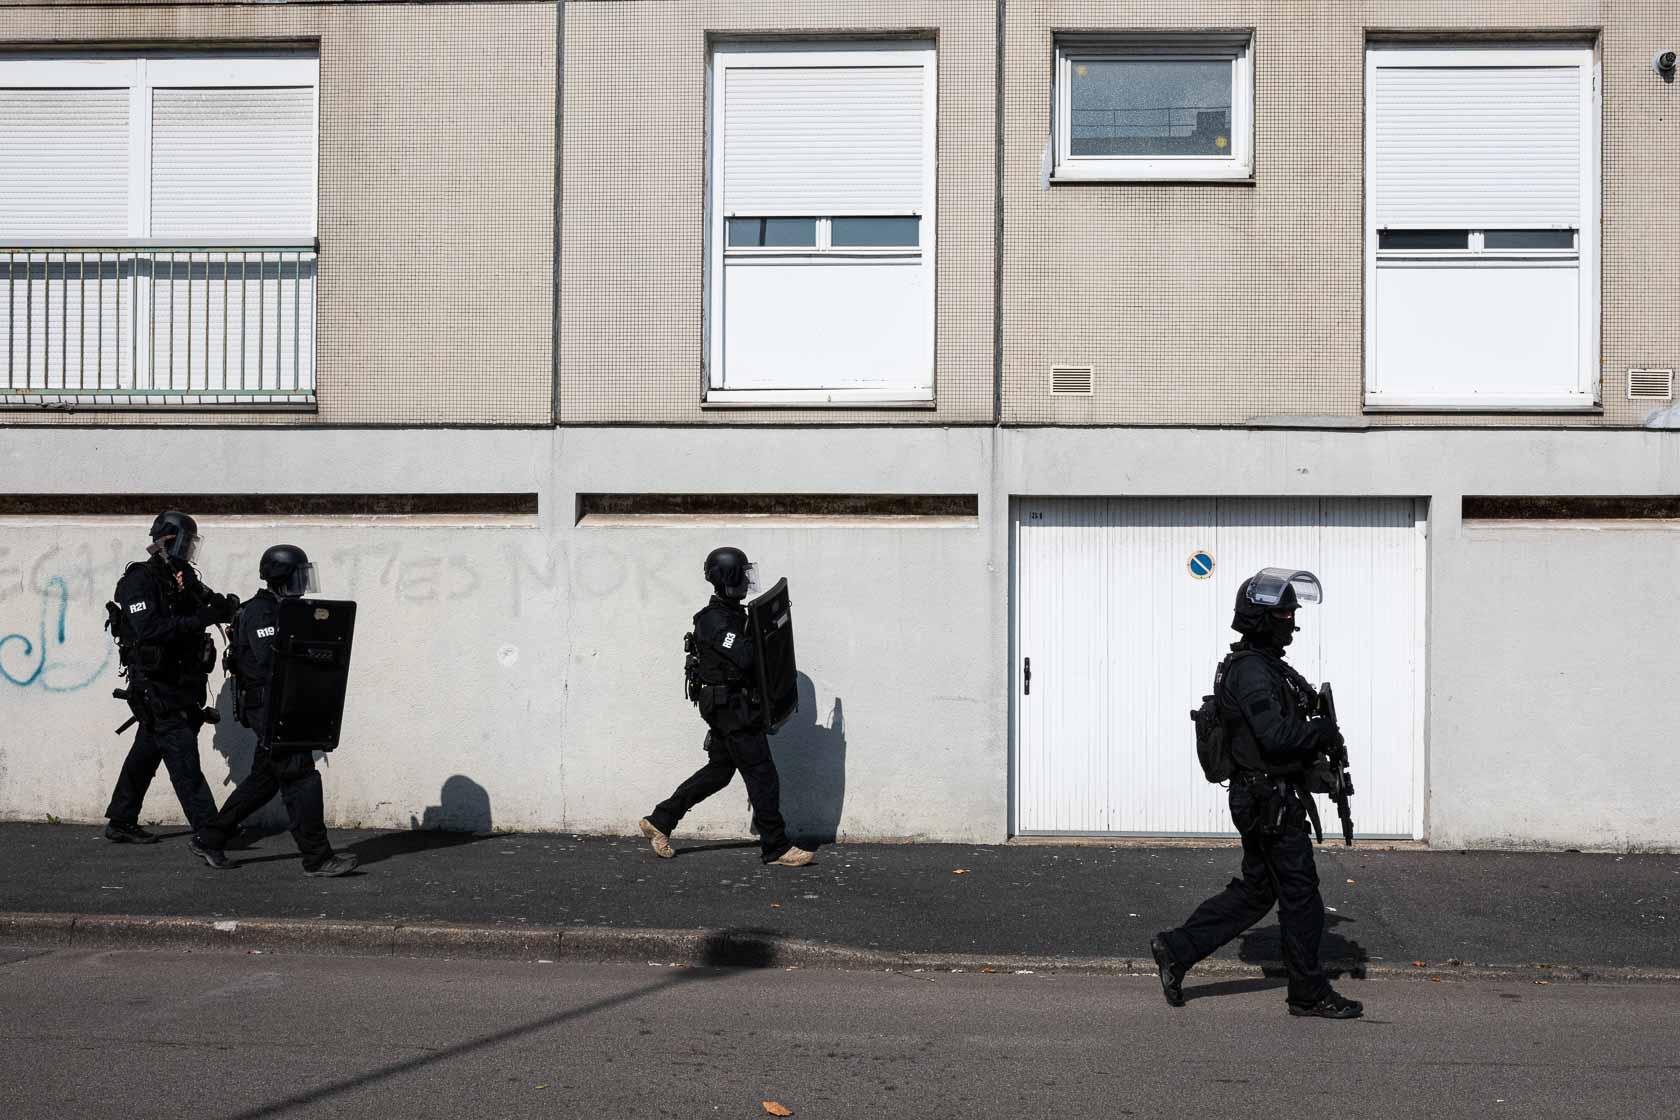 Intervention du RAID dans le quartier Bottière suite à une alerte à la bombe Nantes, France - Août 2021